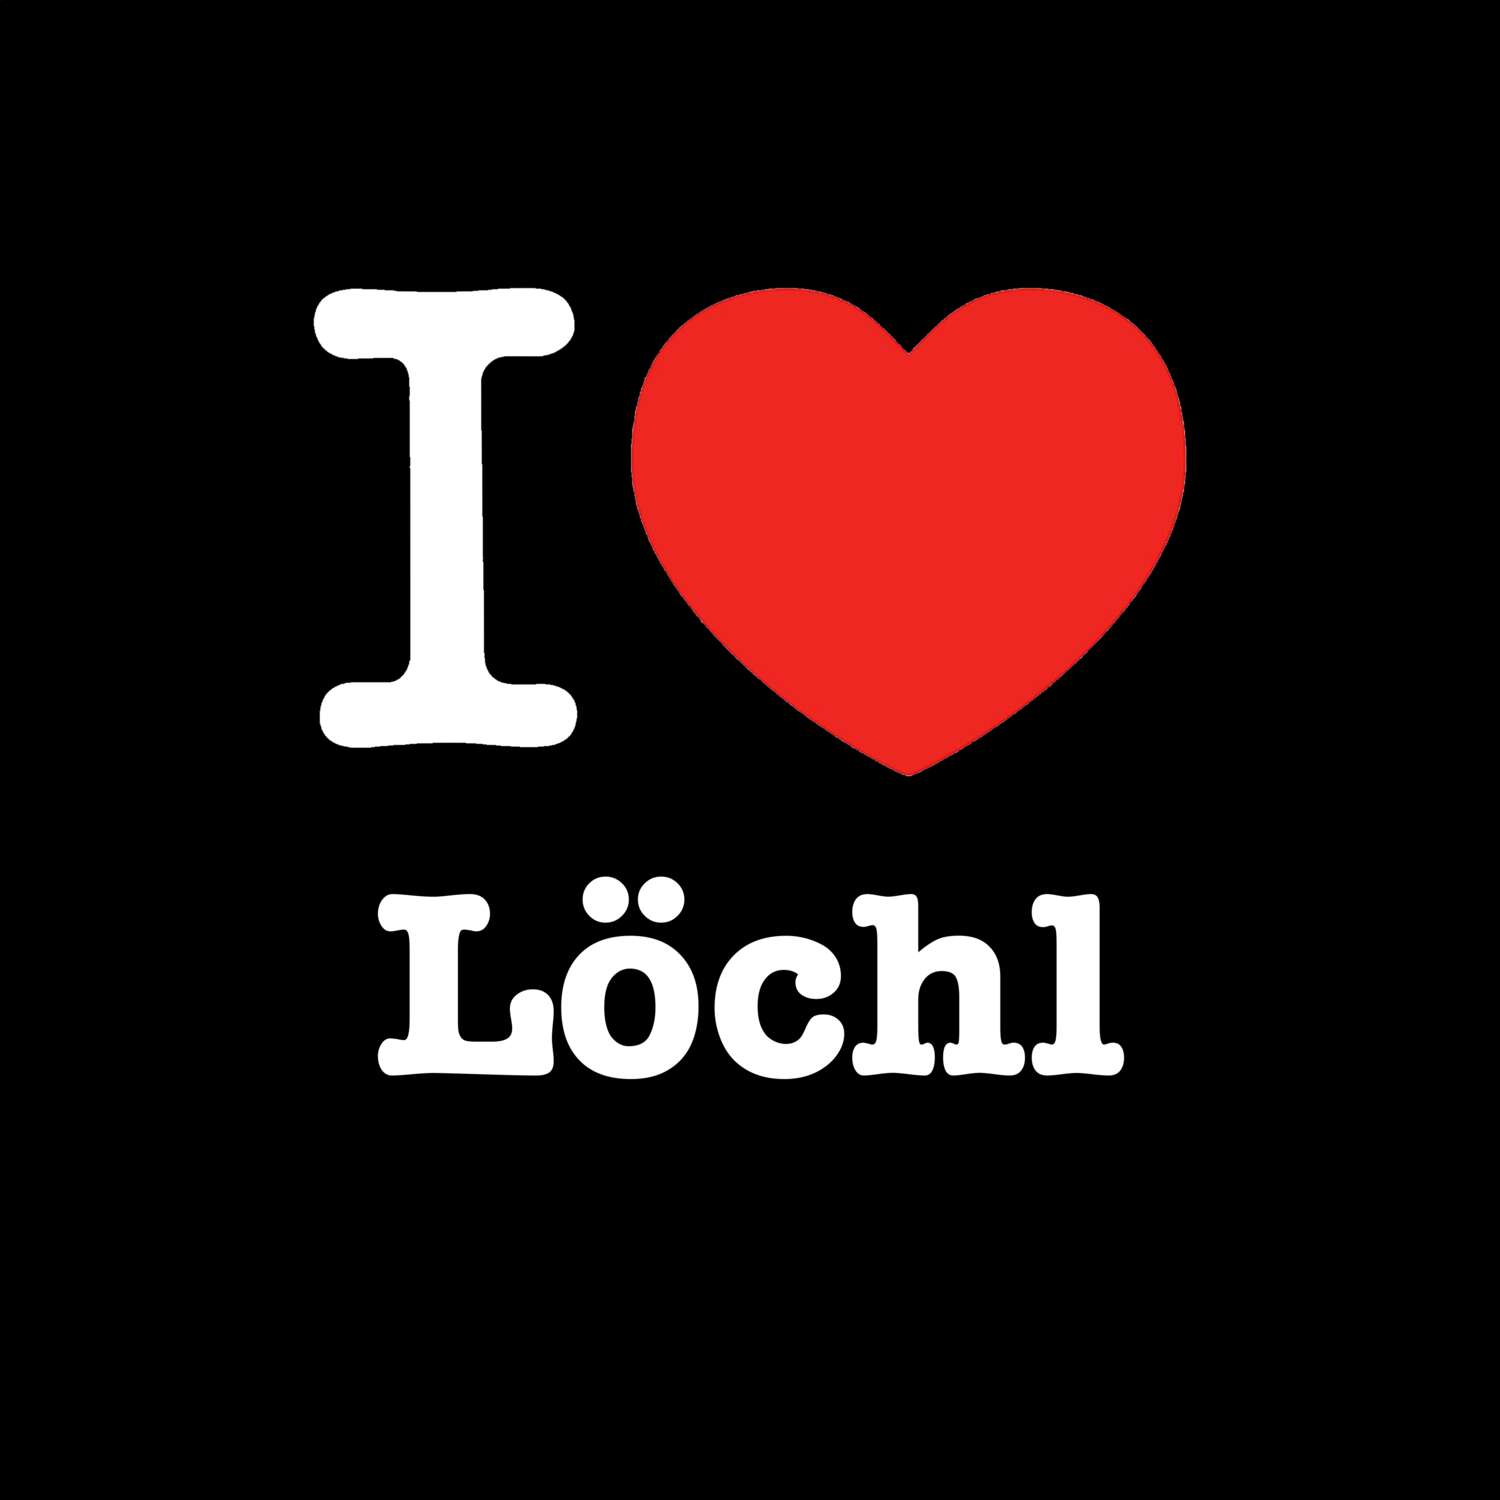 Löchl T-Shirt »I love«